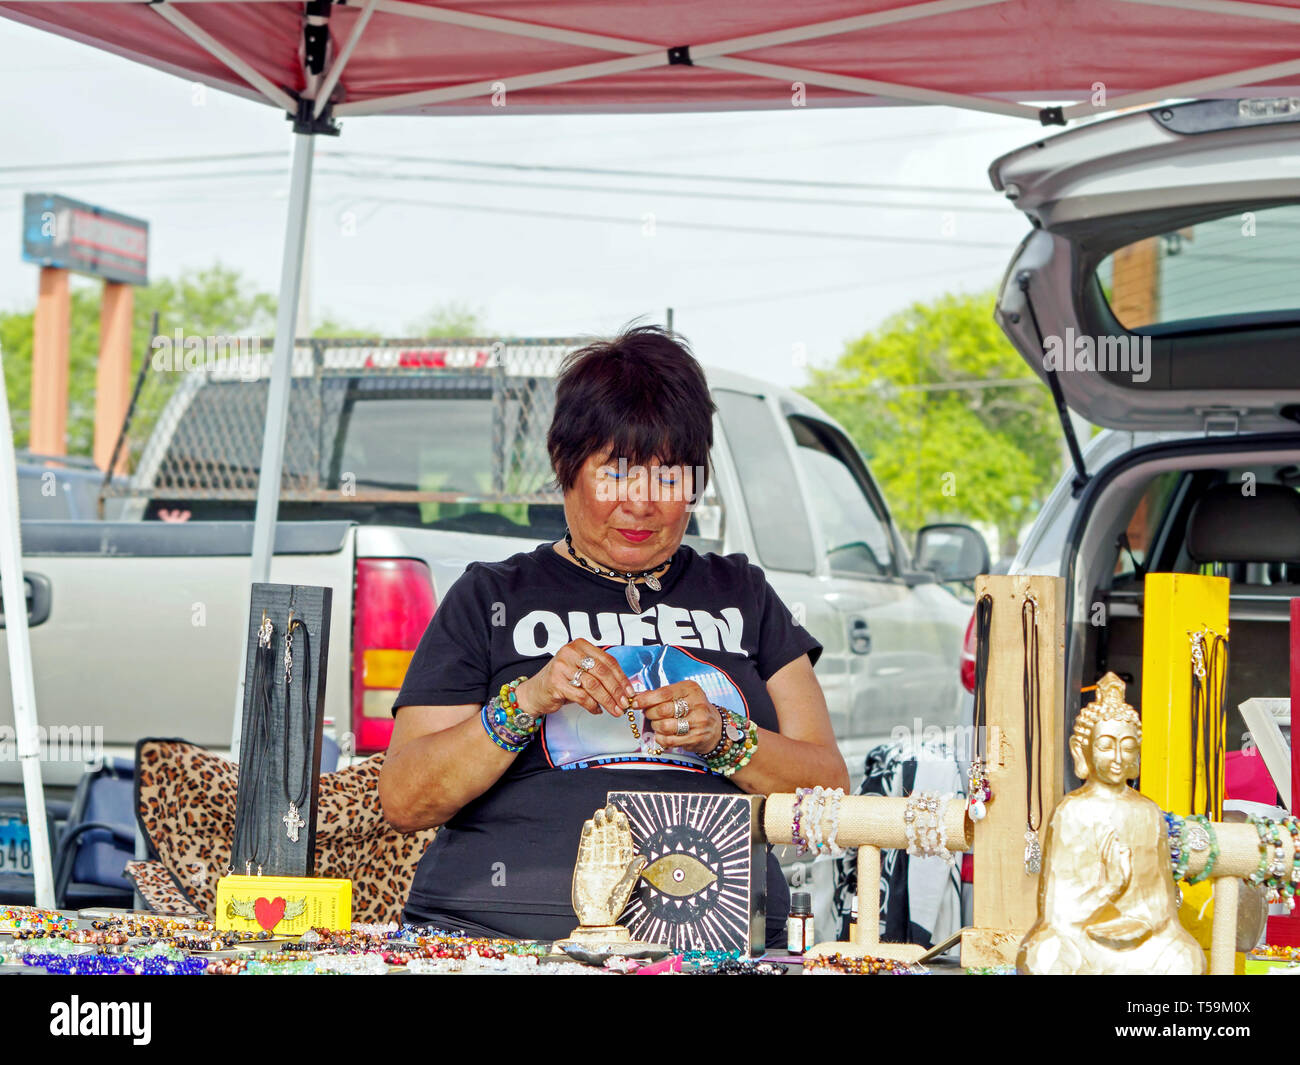 Eine dunkelhaarige, weiblichen Schmuck Anbieter tragen einer "Königin", T-Shirt, Armband und Halskette Mitarbeiter ihrem Stand. Corpus Christi Southside Farmers' Market. Stockfoto